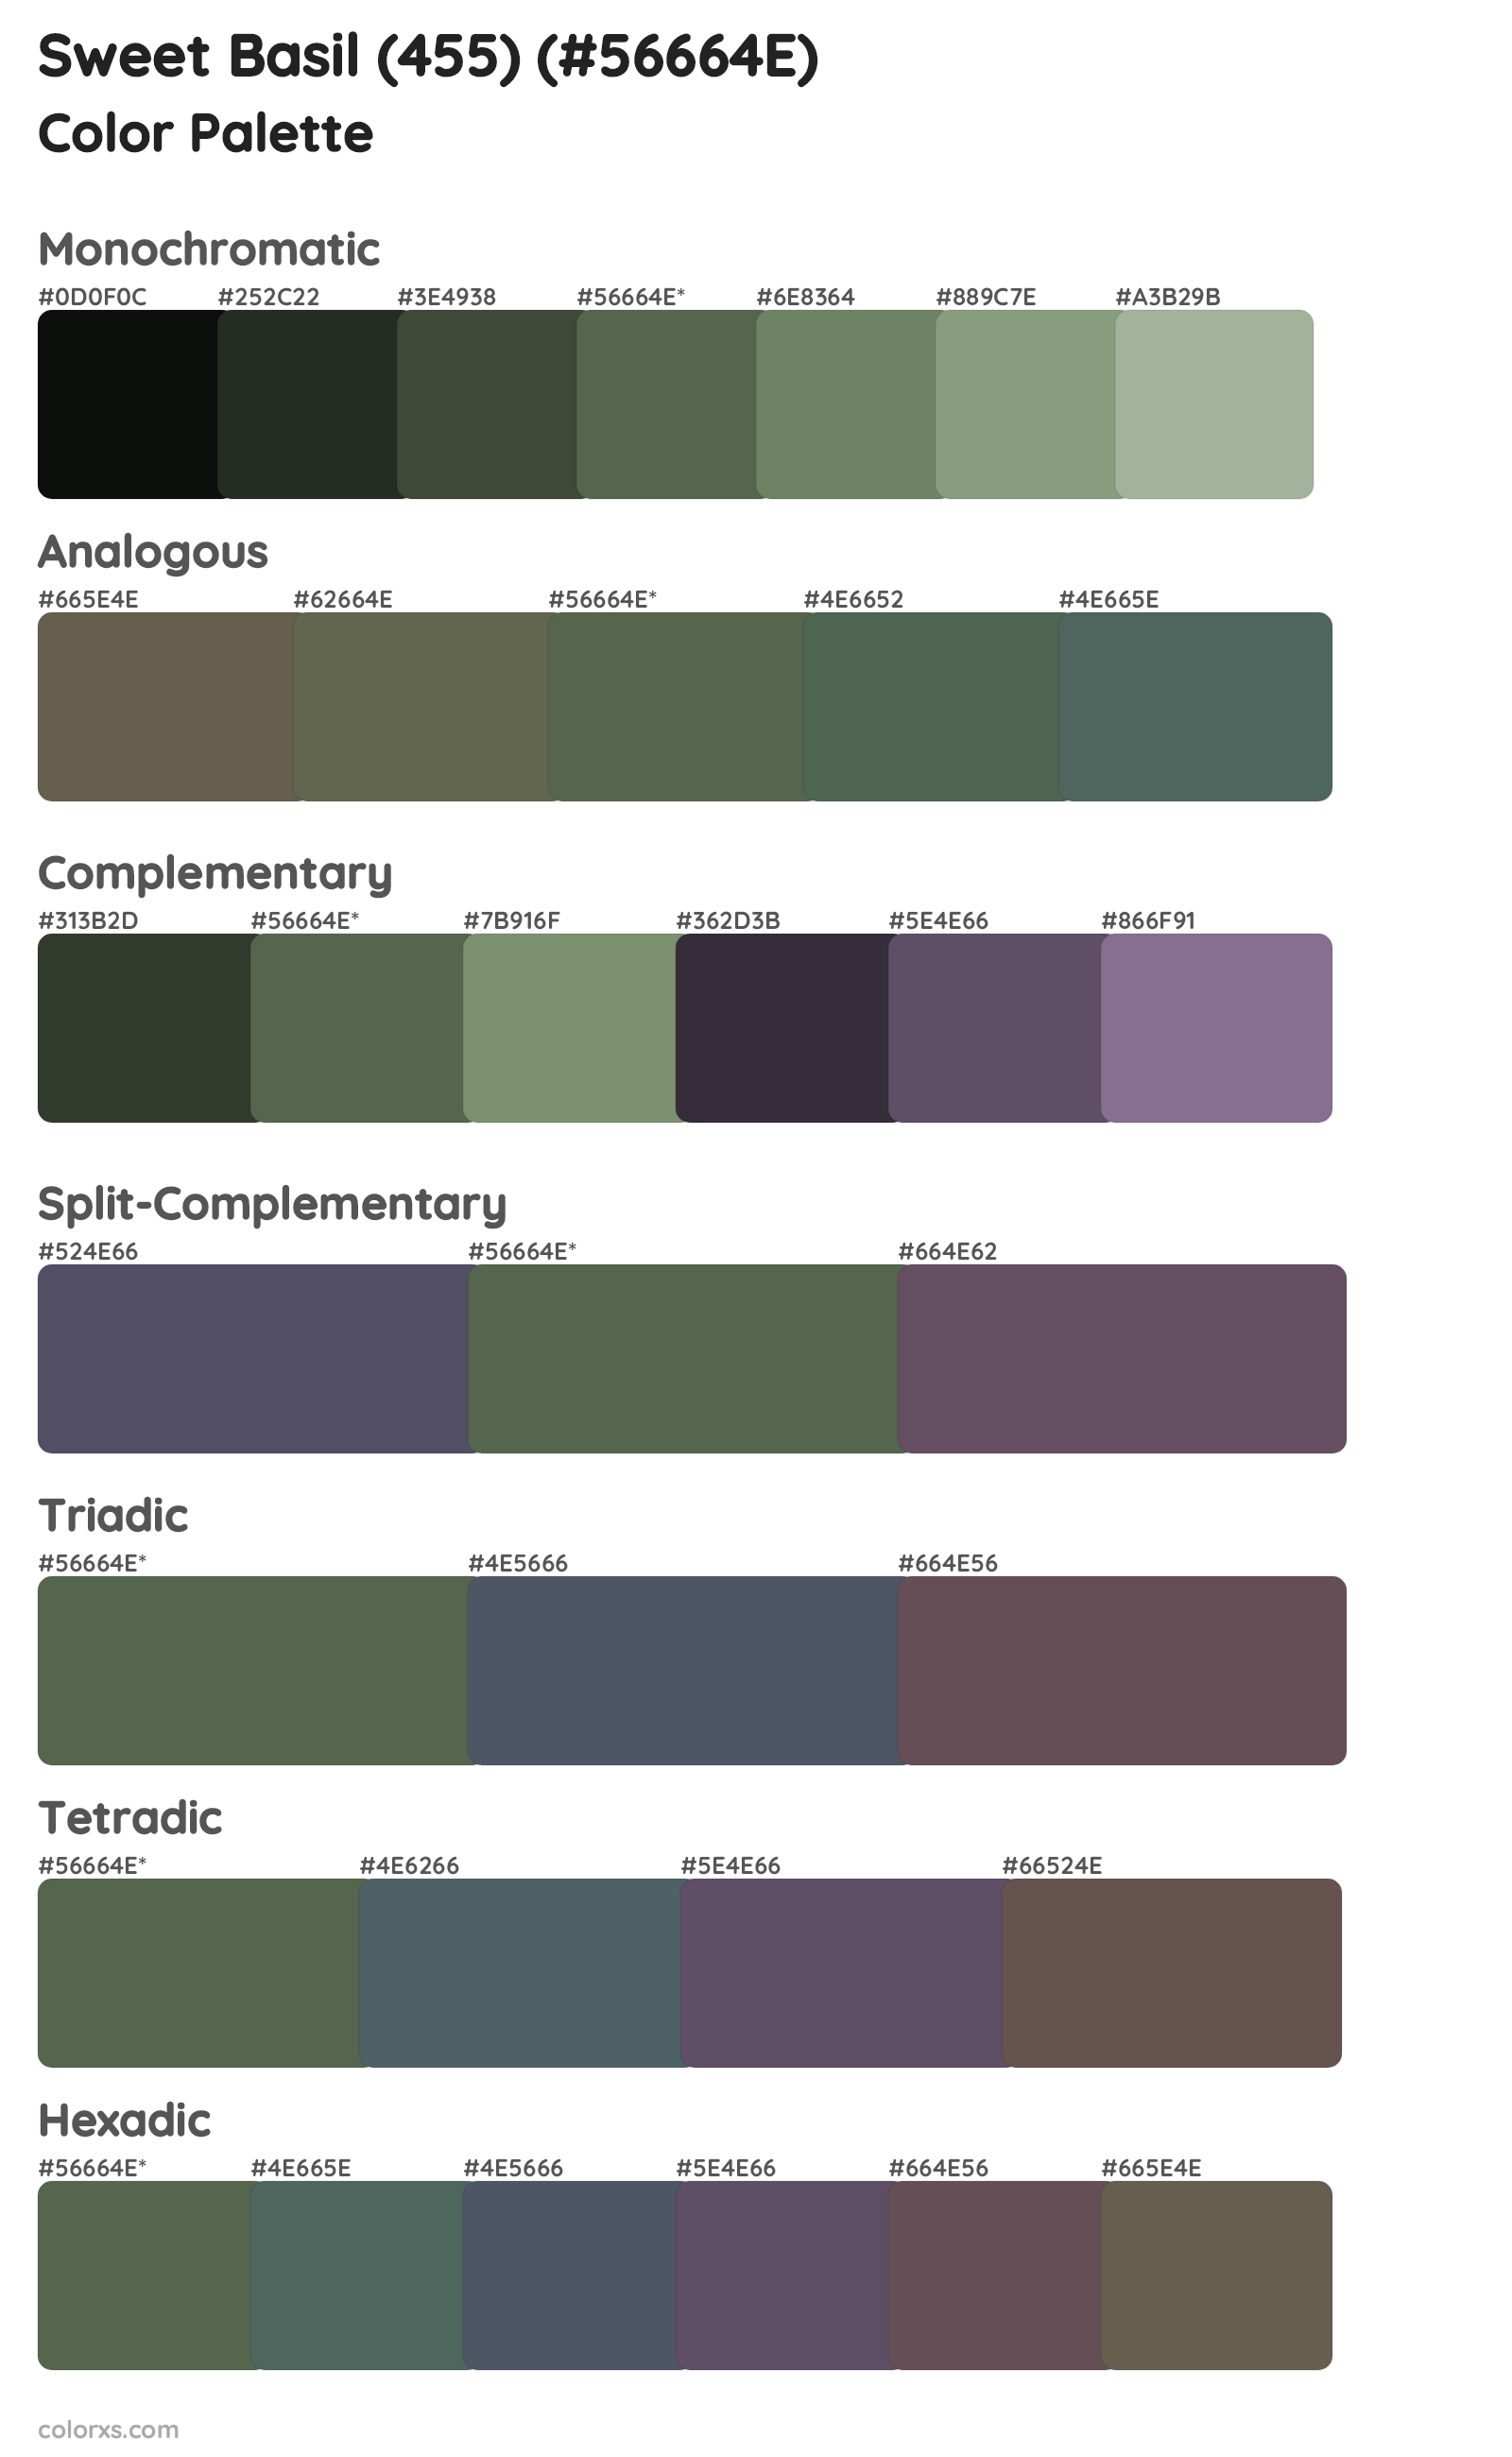 Sweet Basil (455) Color Scheme Palettes